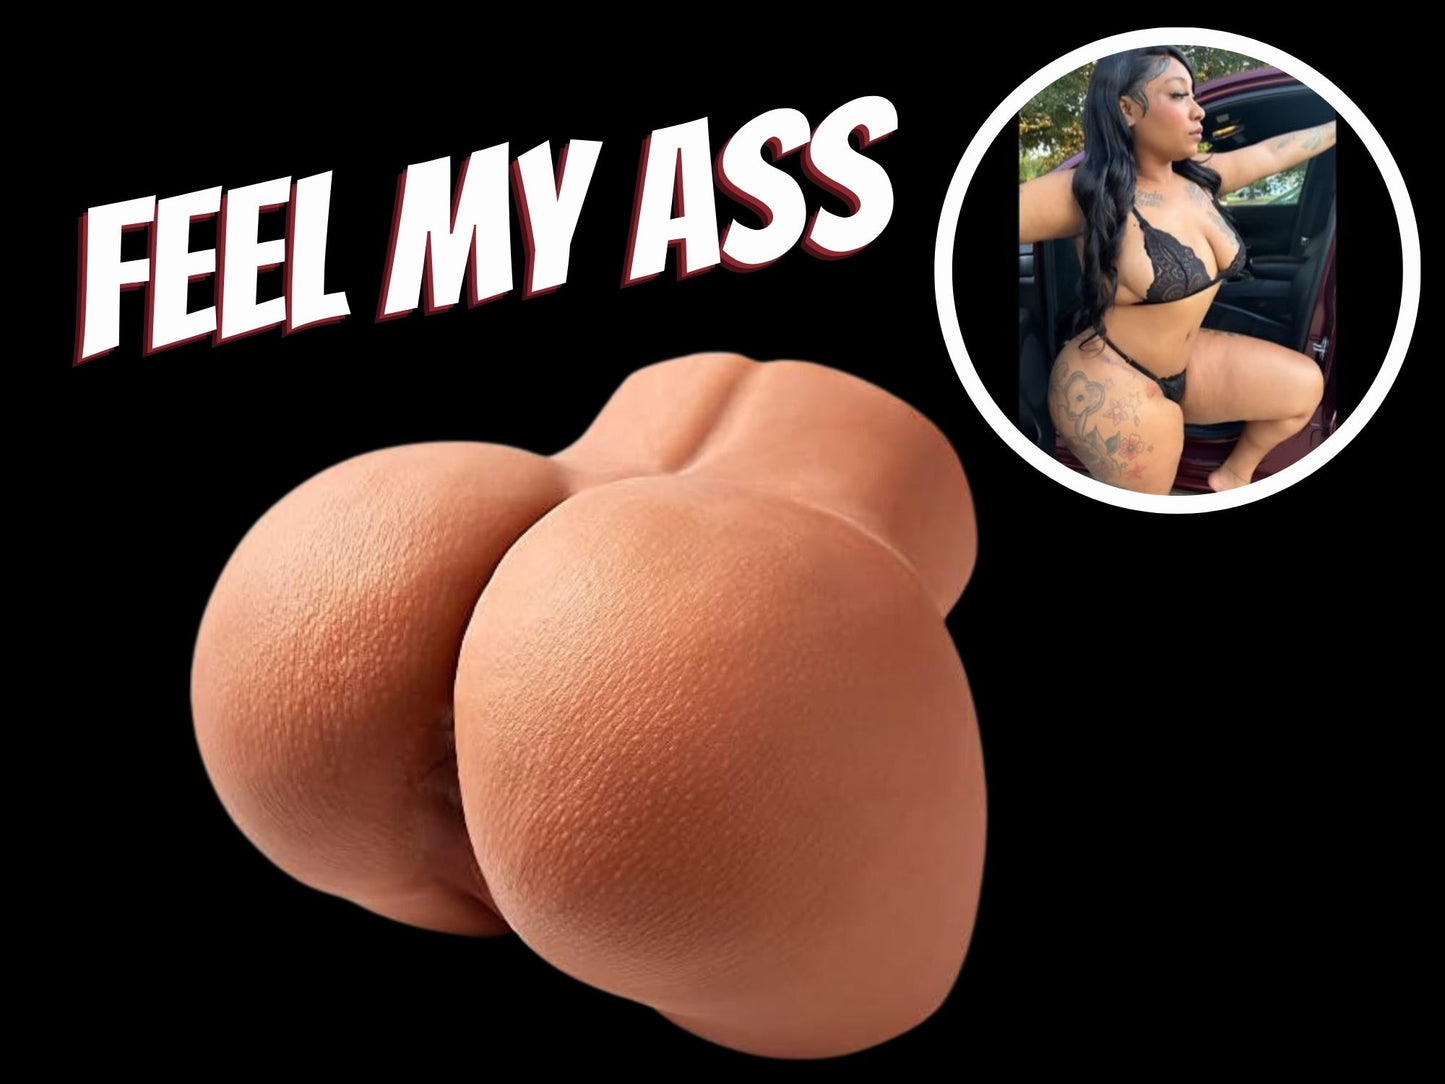 Layla's Ass